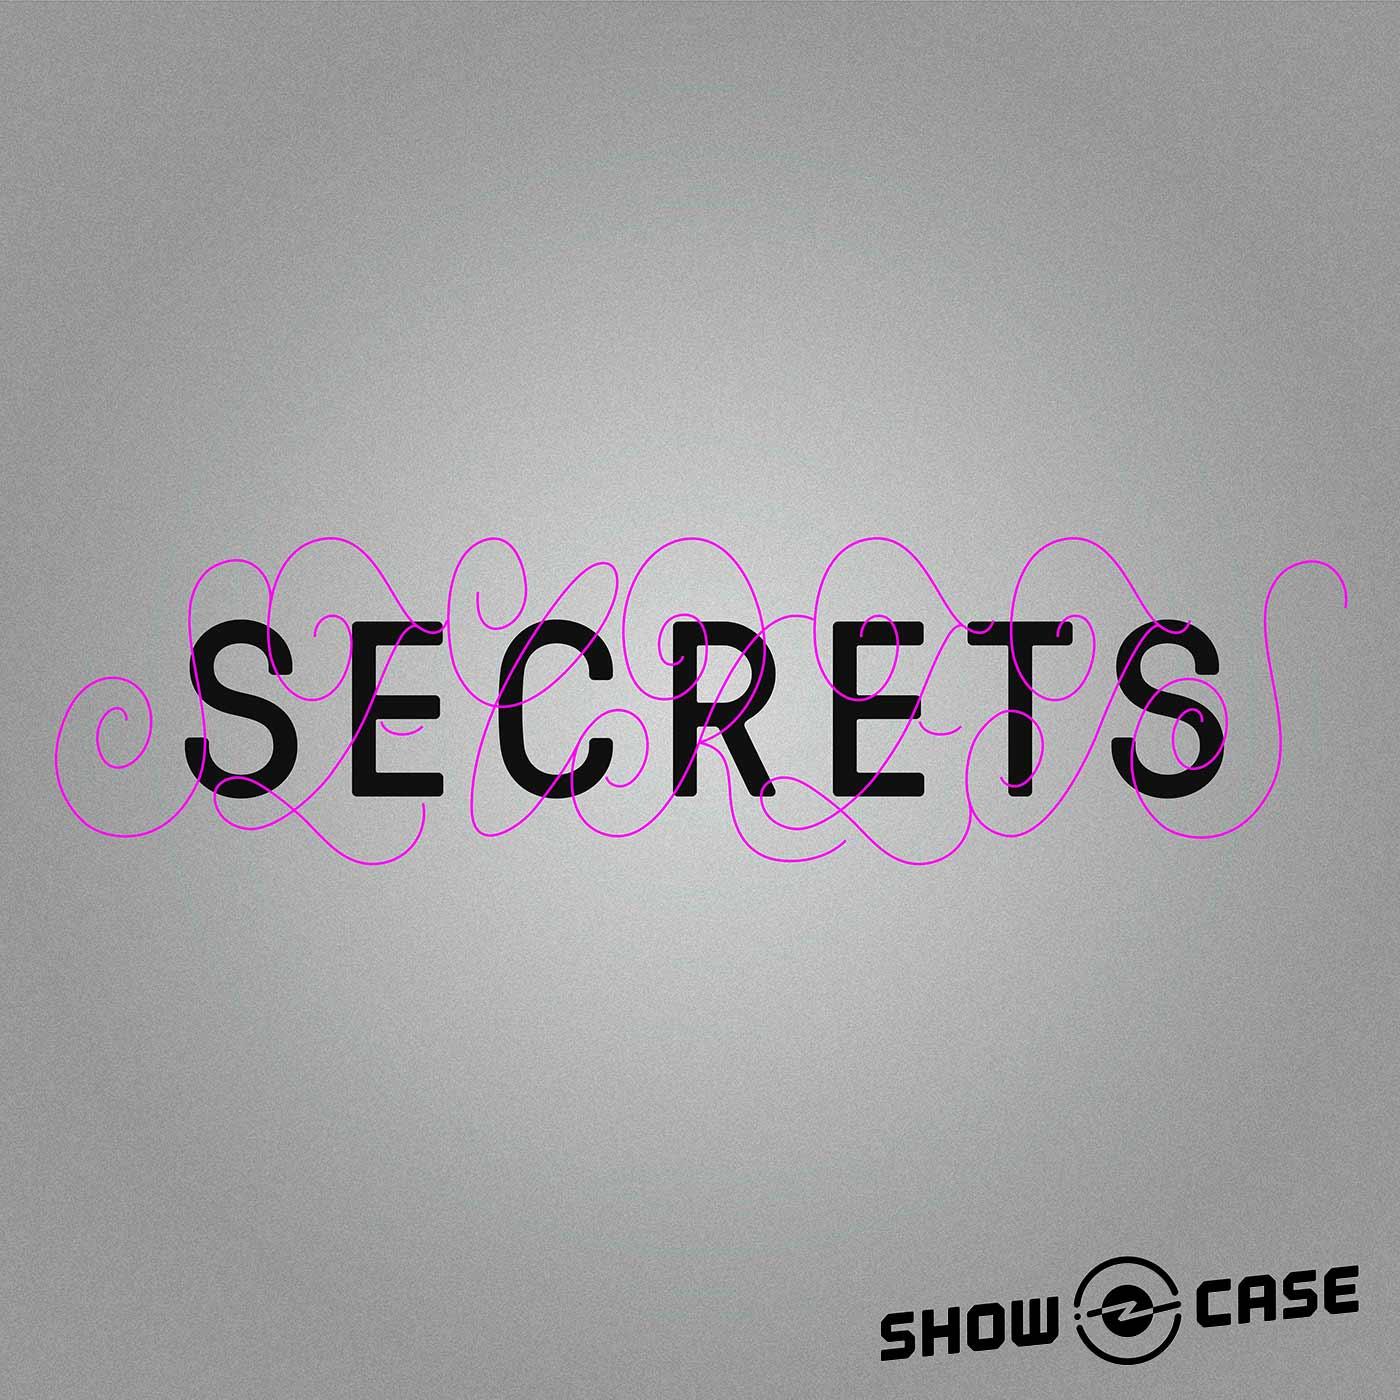 Thumbnail for "Secrets #1 – Discover a Secret".